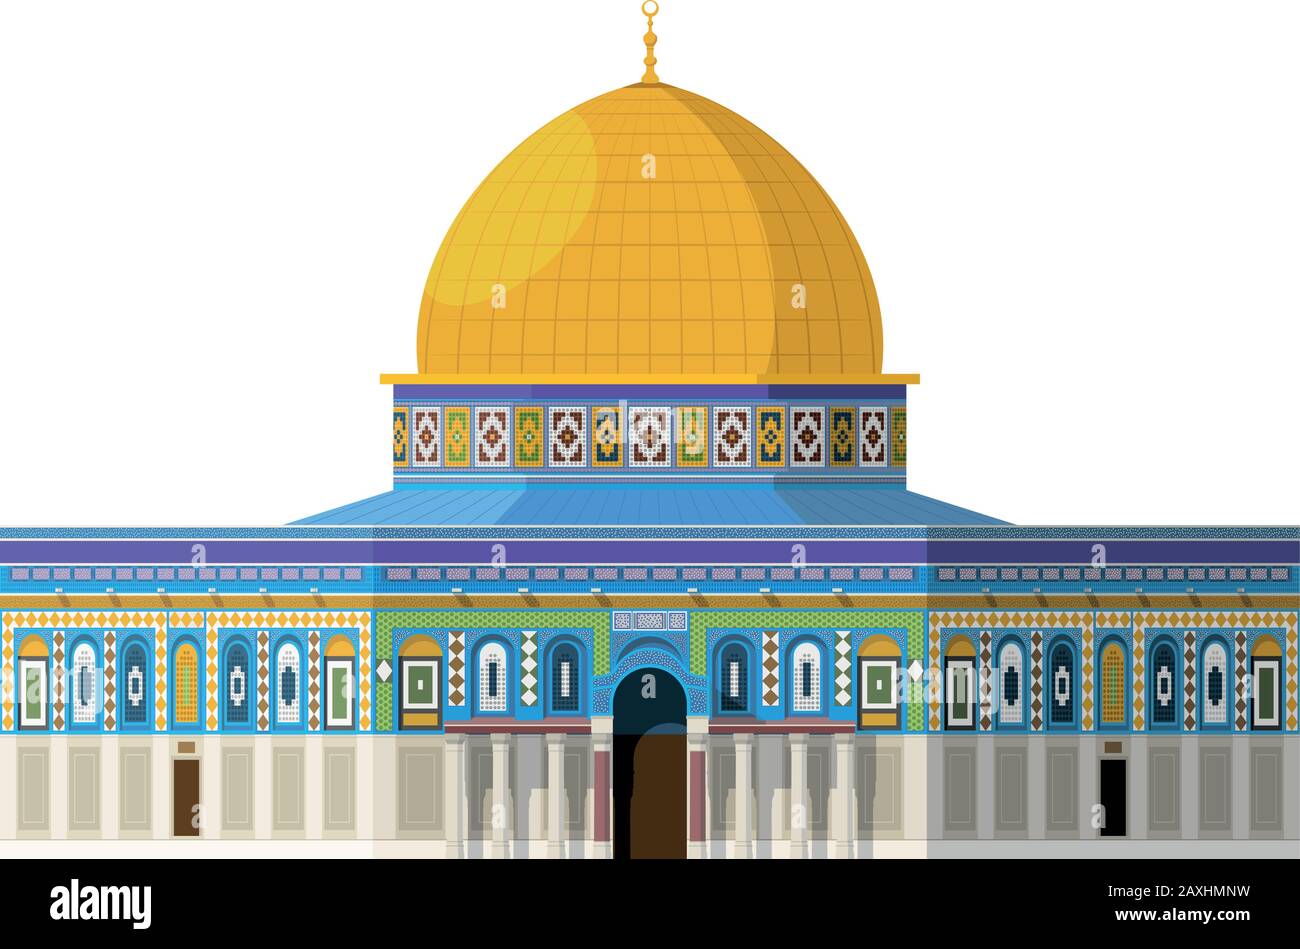 Kuppel des Felsens (Jerusalem). Isoliert auf weißer Hintergrundvektor-Abbildung. Stock Vektor